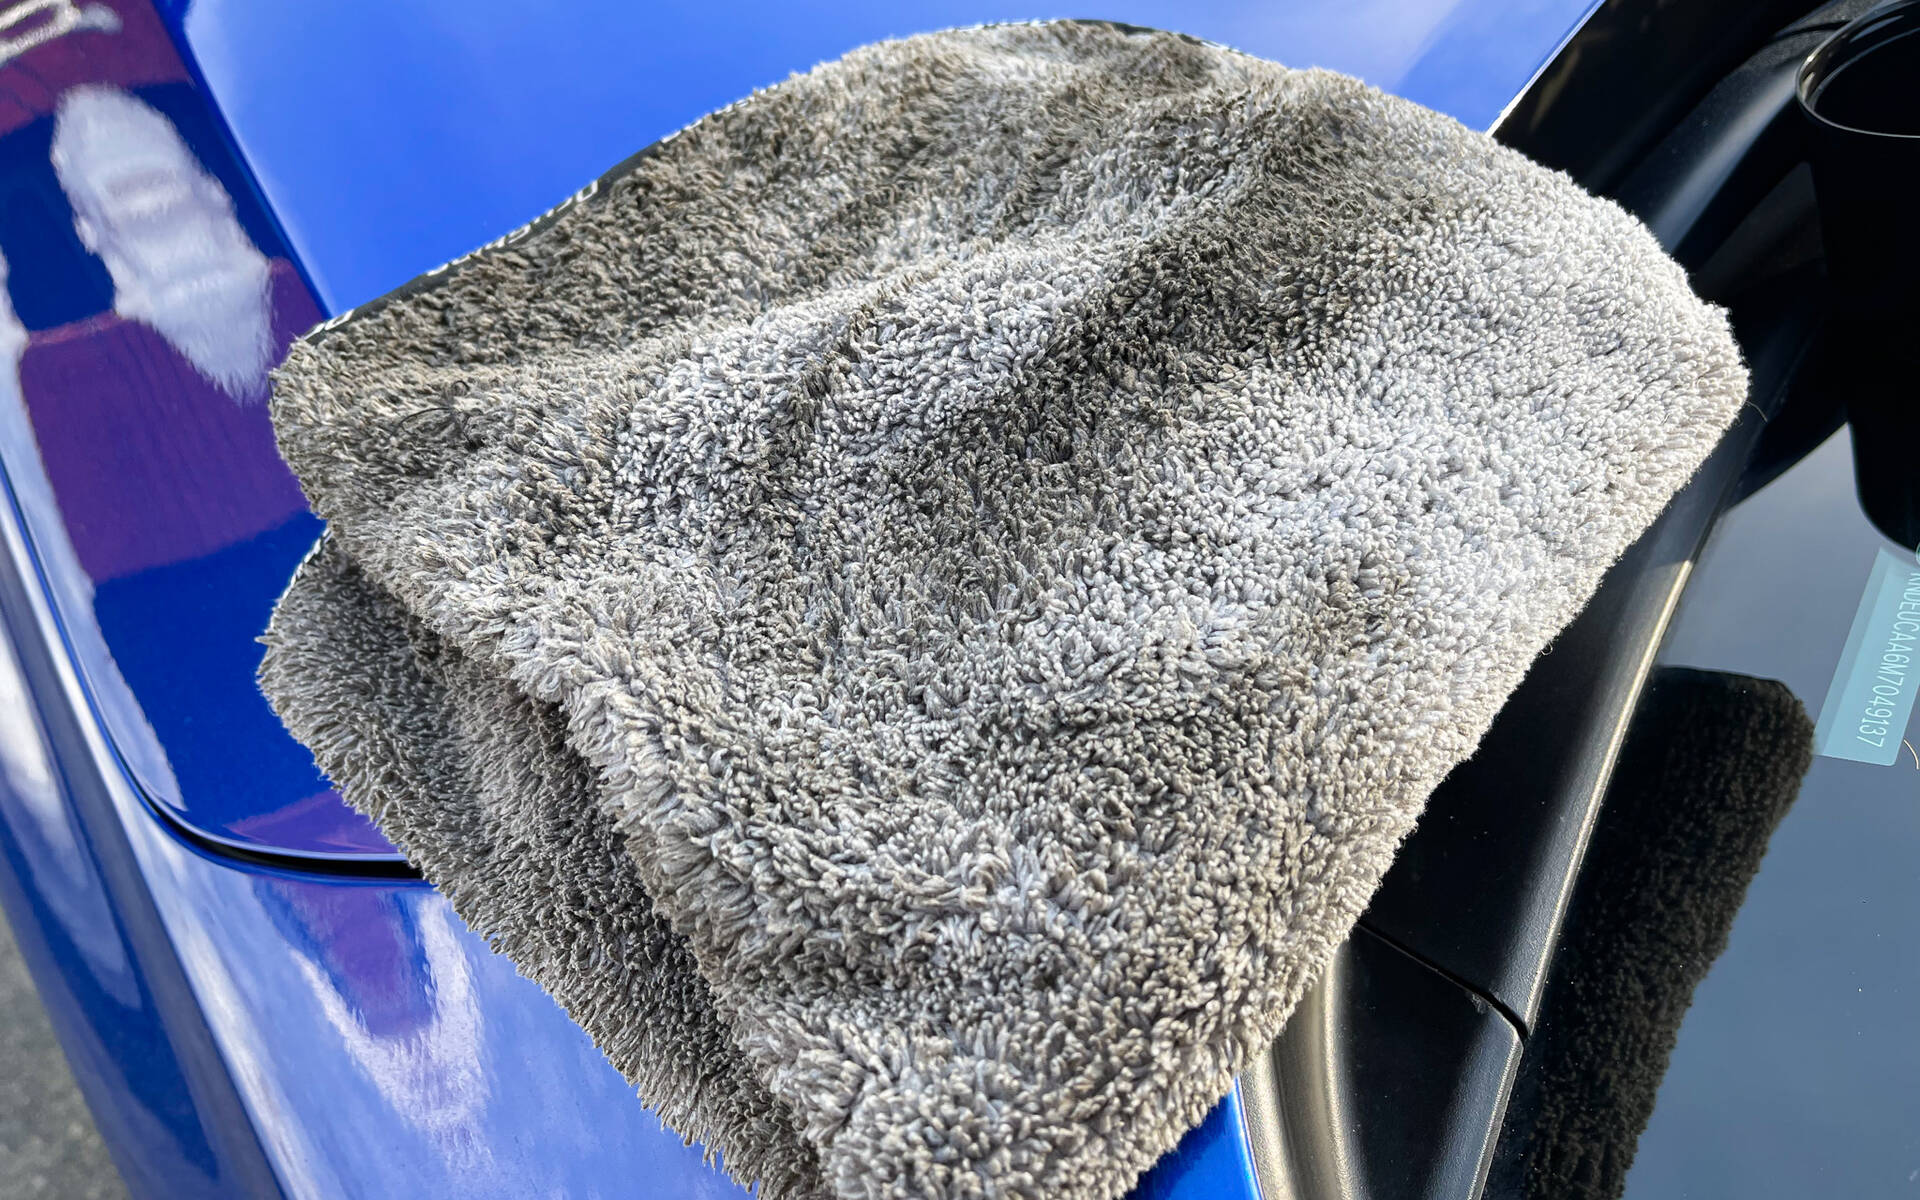 Dégraissant, désincrustant et nettoyant auto pour un lavage auto sans eau